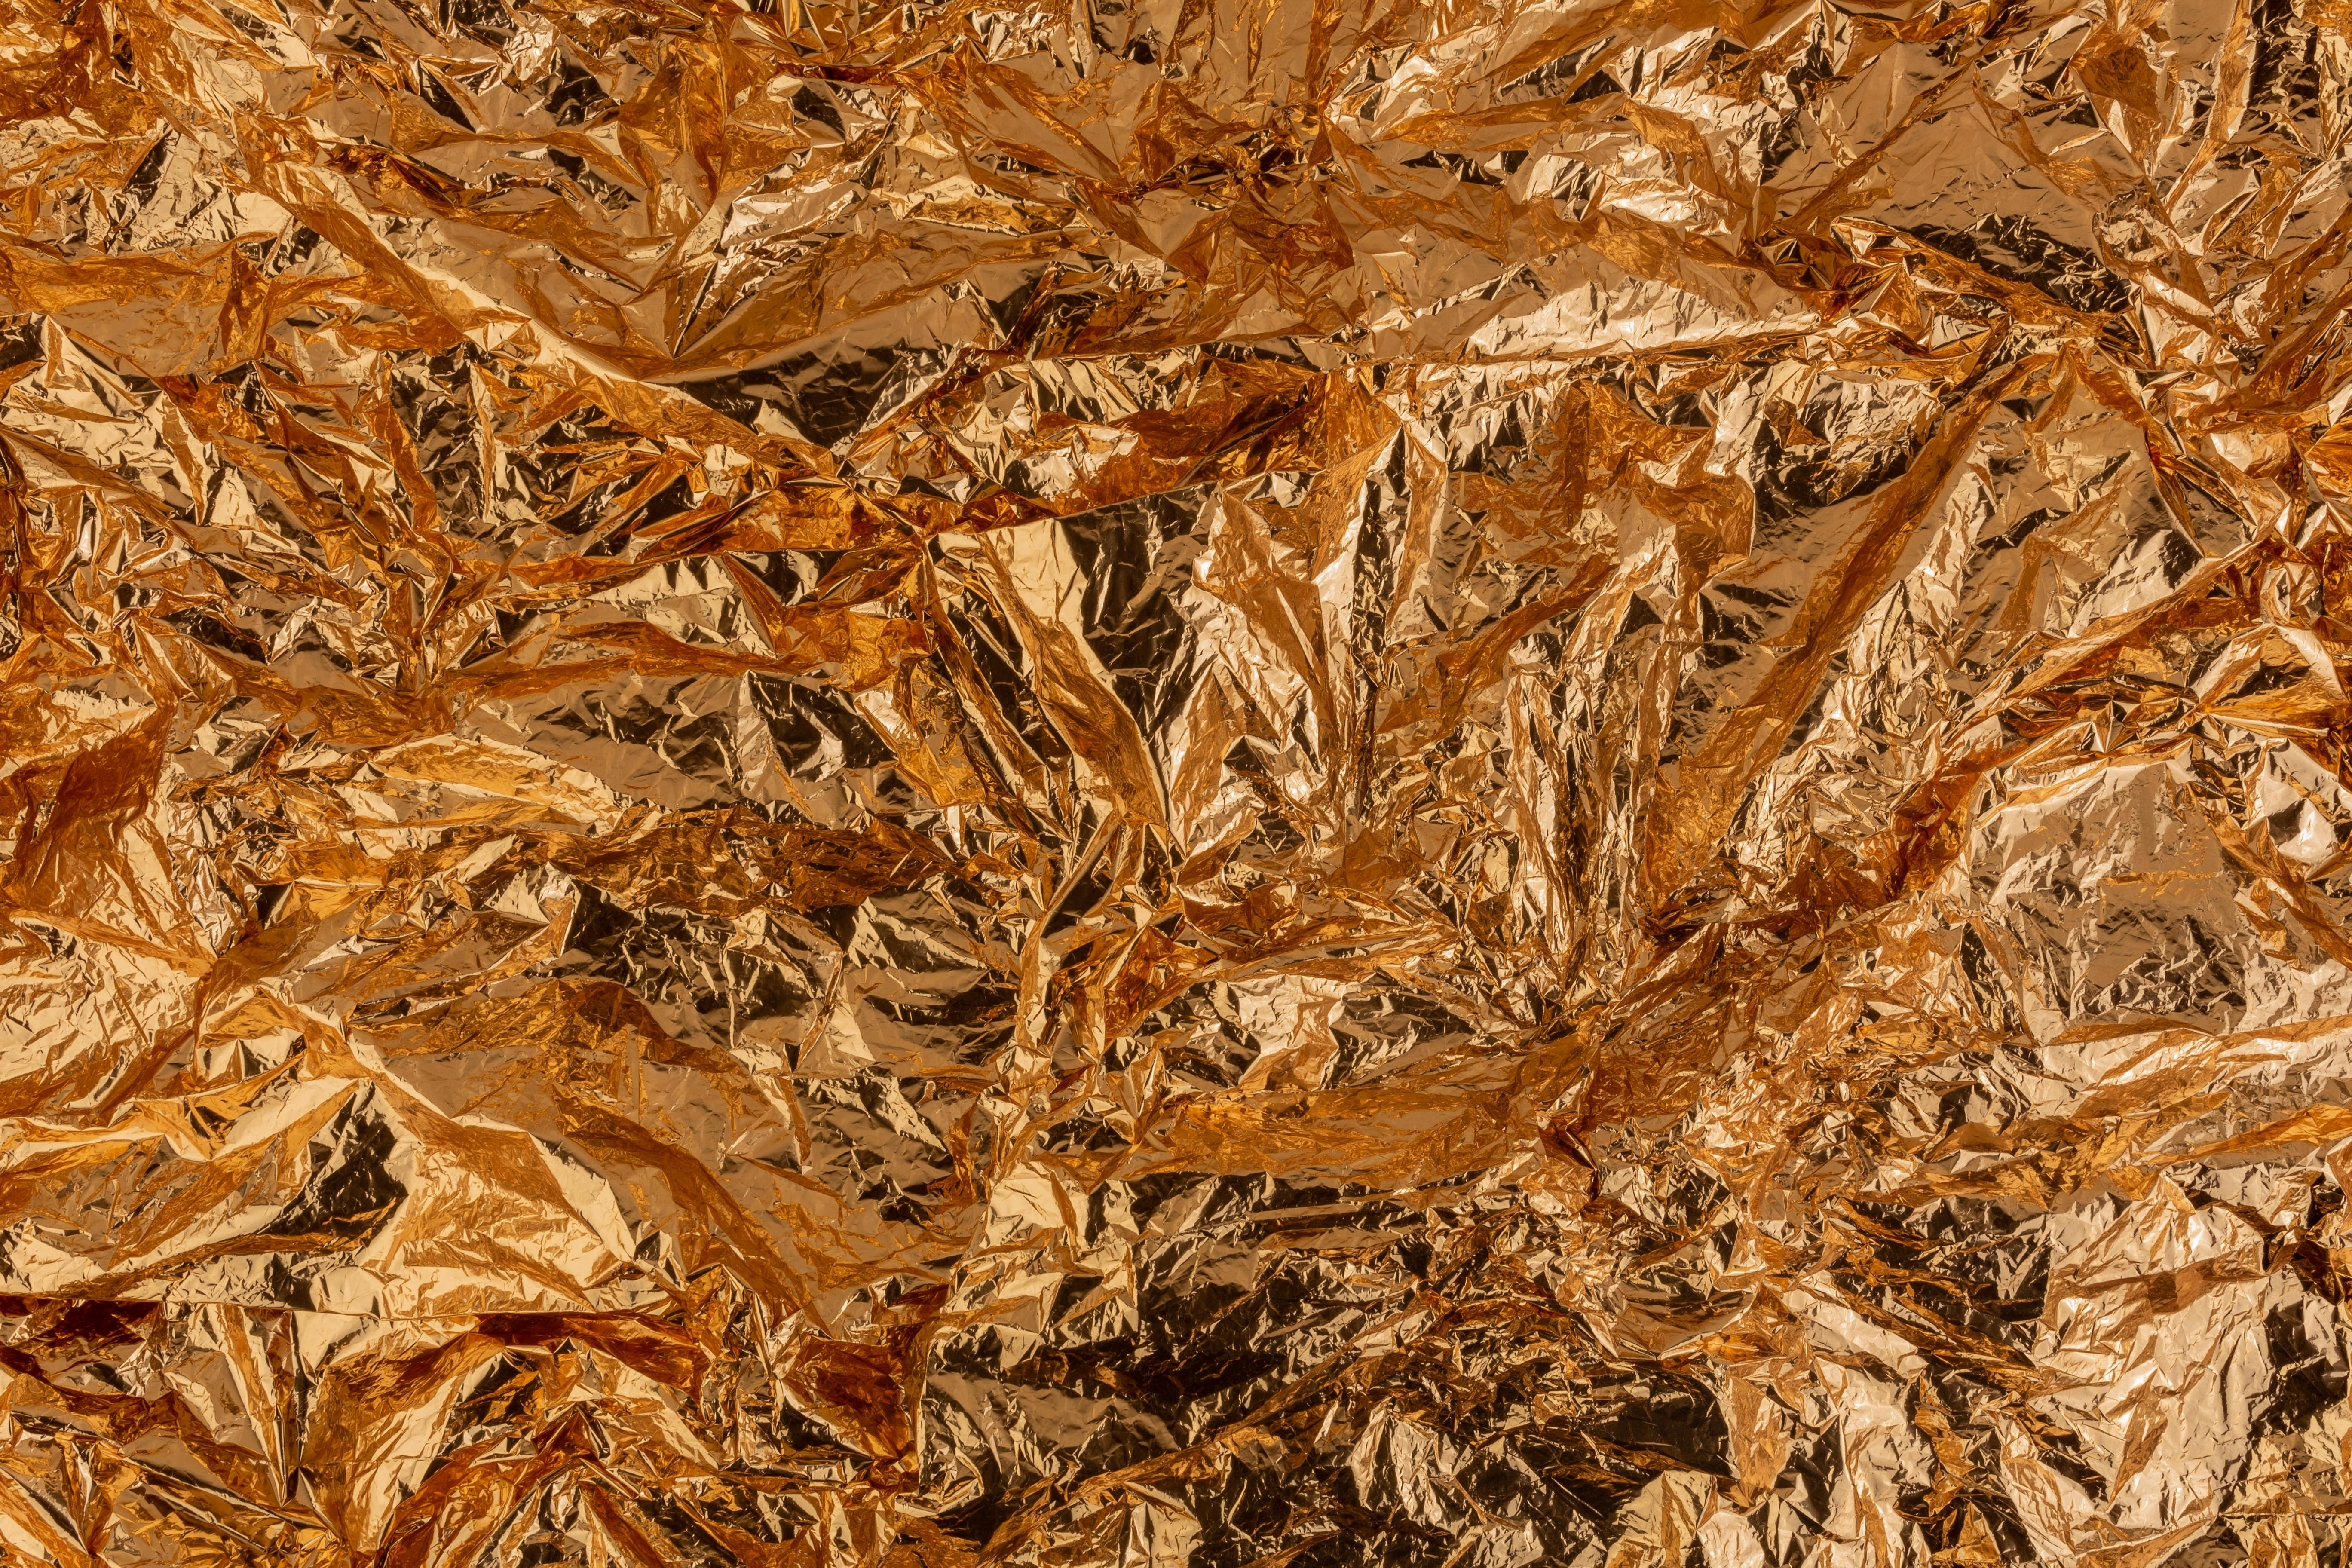 Gold crumpled aluminum foil texture